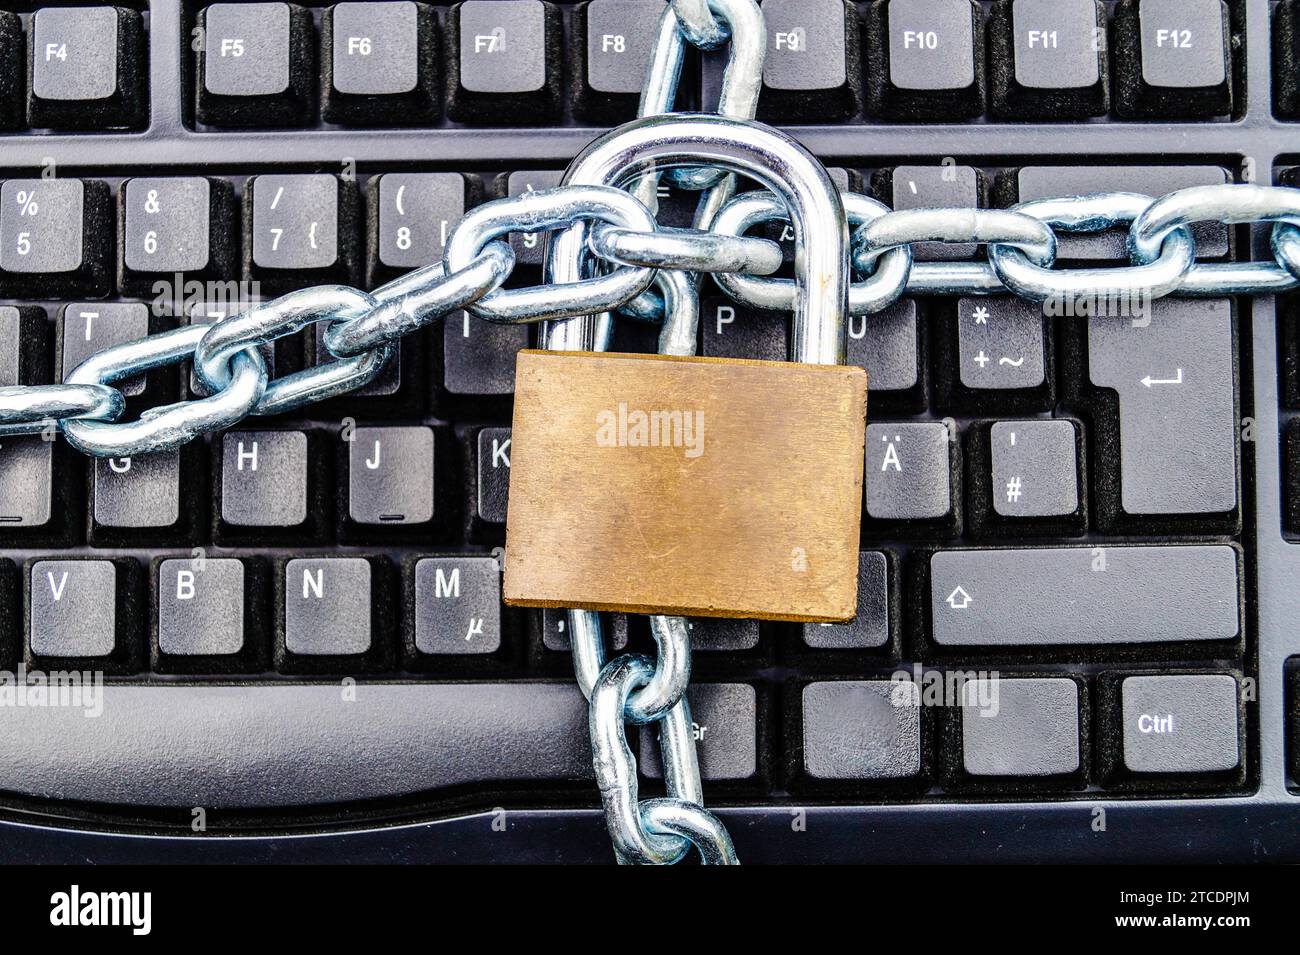 clavier avec chaîne et serrure de sécurité, image de symbole pour la confidentialité des données Banque D'Images